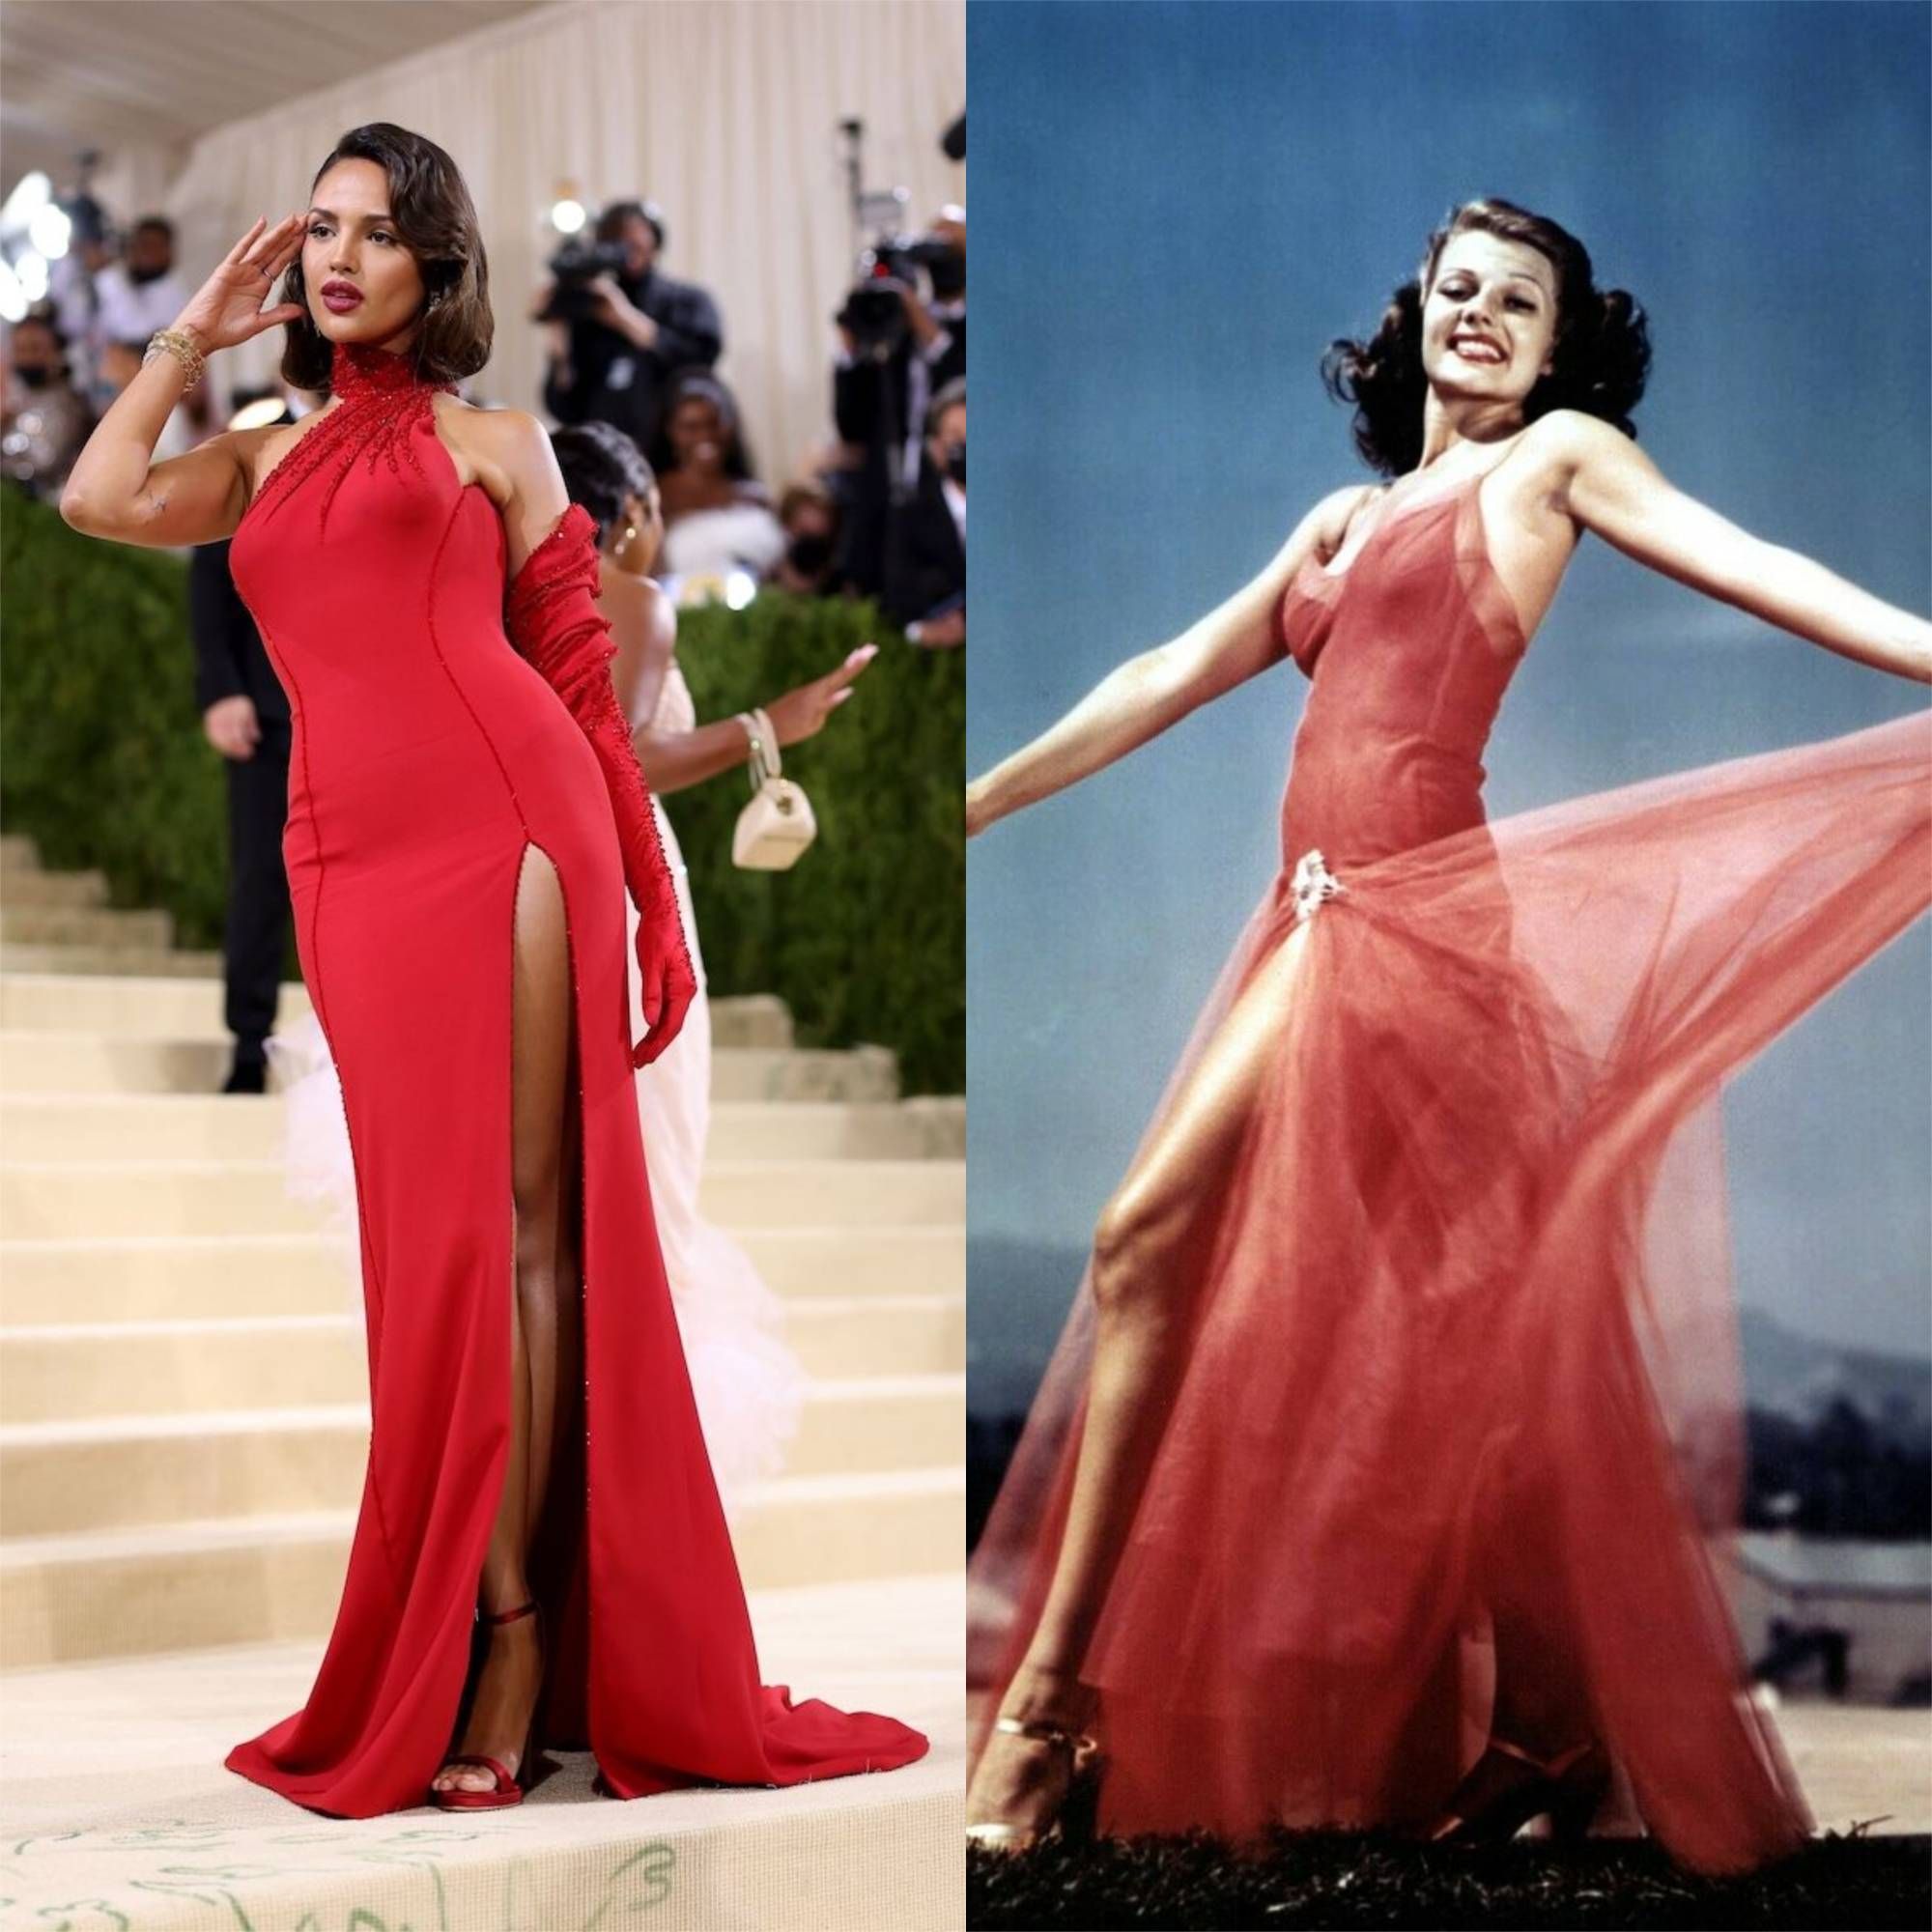 Gaya Karpet Merah Seleb yang Terinspirasi dari Tokoh Ikonik Hollywood